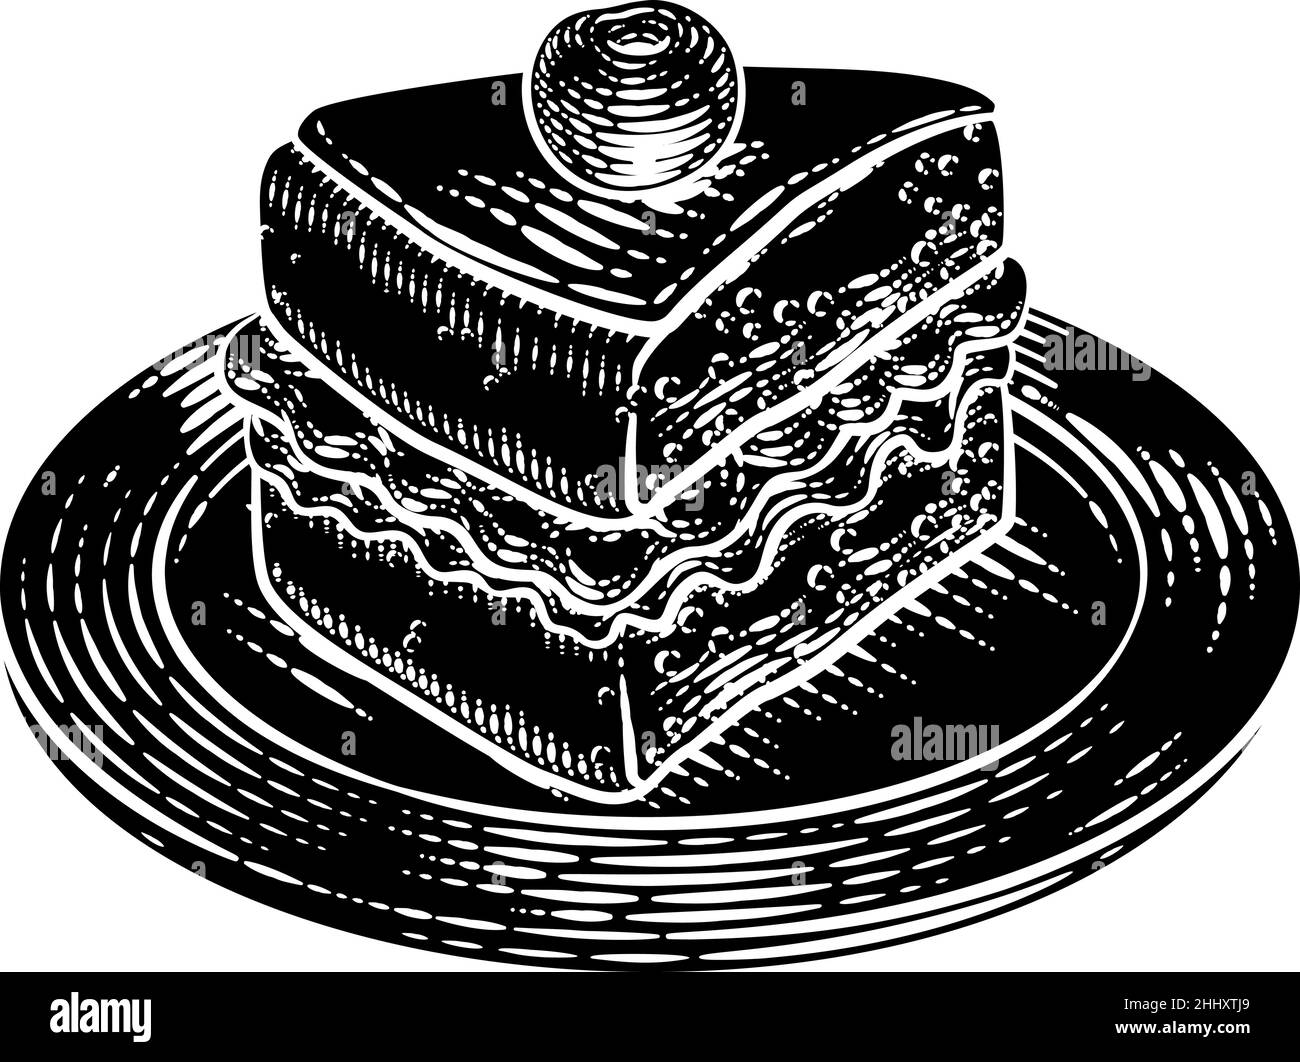 Kuchen Schwamm Slice Jam Creme Holzschnitt Zeichnung Stock Vektor